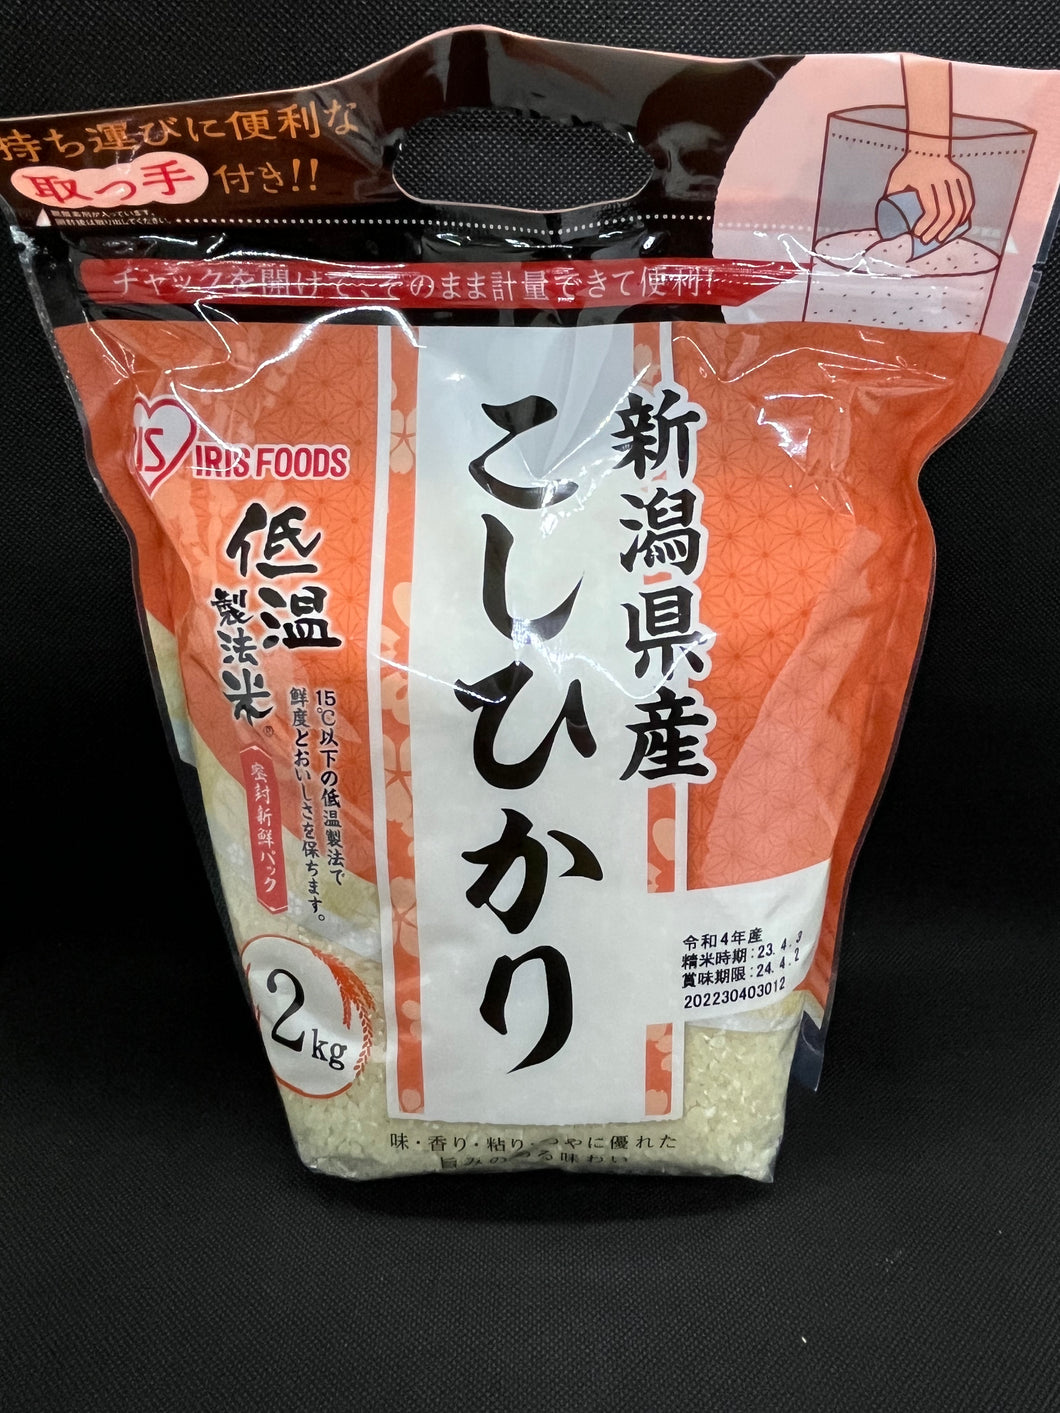 Iris Foods Koshihikari (2Kg)